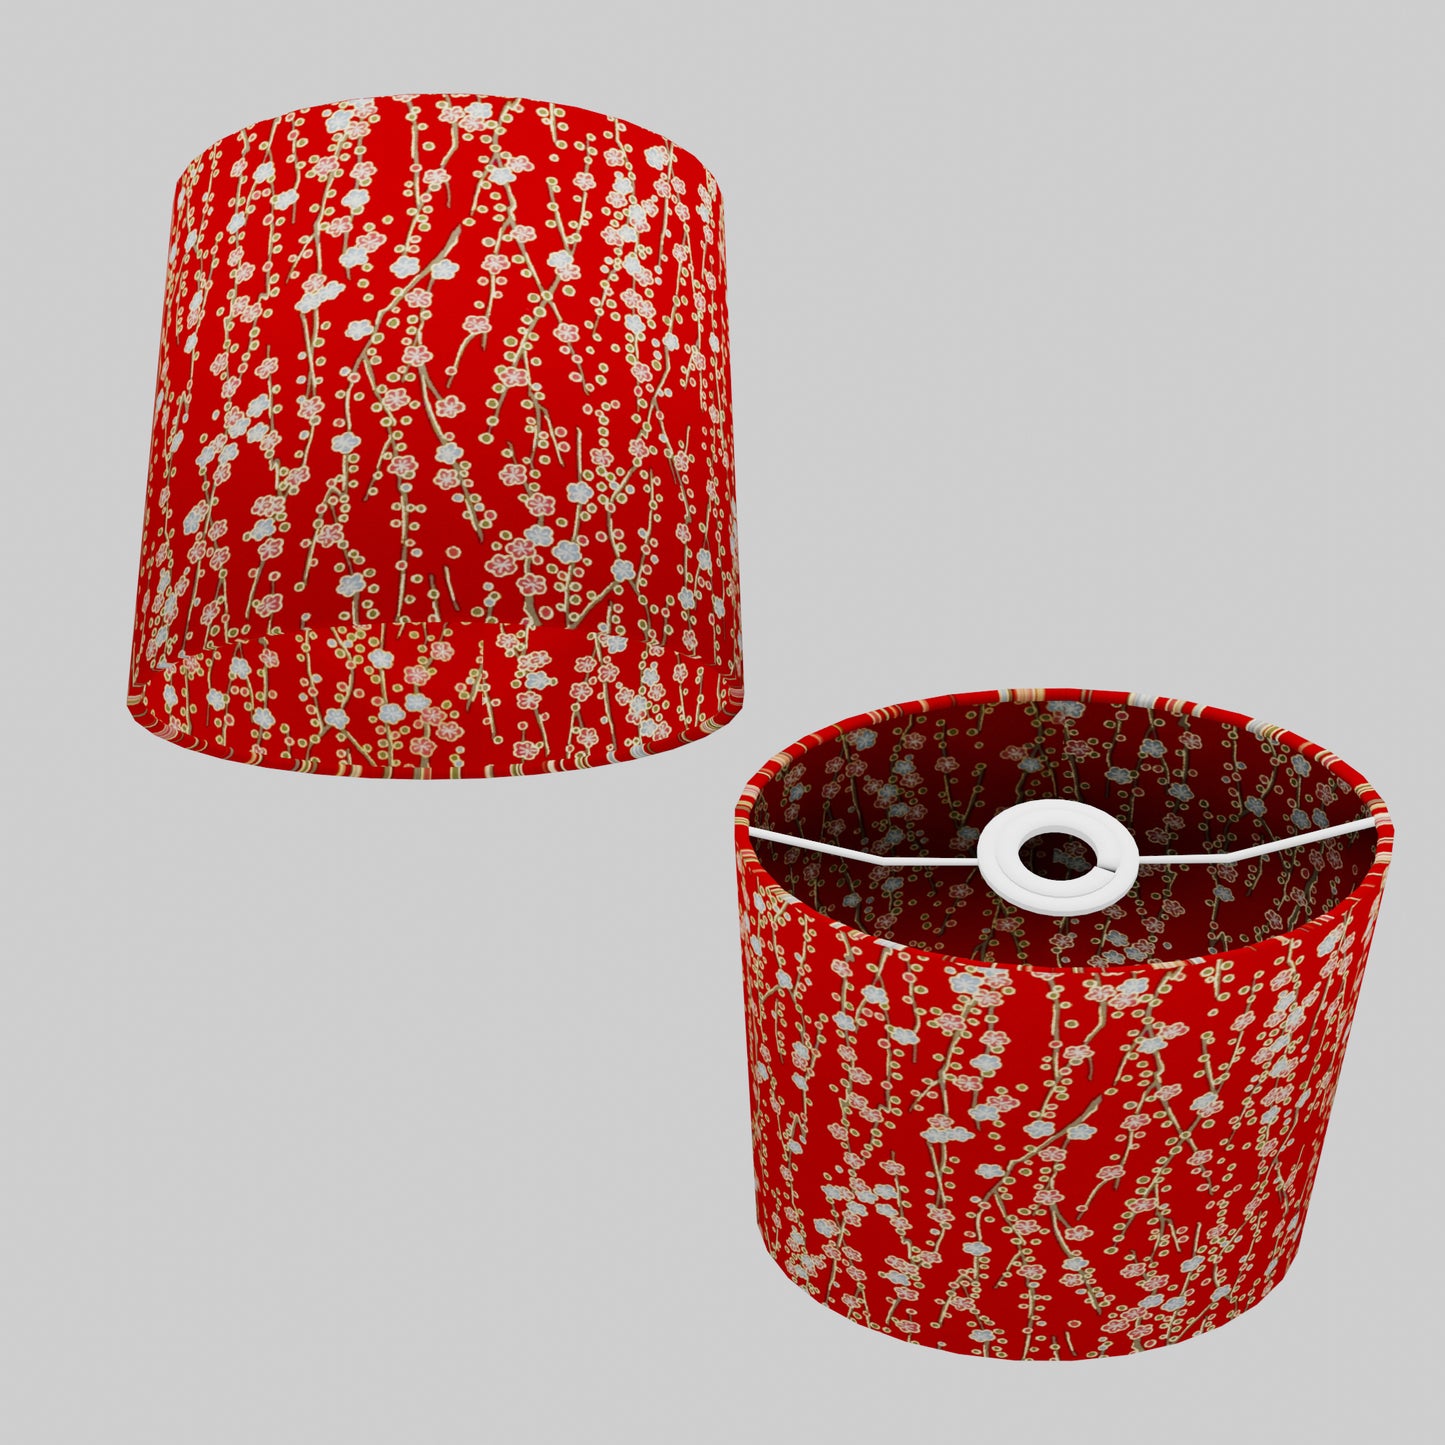 Oval Lamp Shade - W01 ~ Red Daisies, 20cm(w) x 20cm(h) x 13cm(d)